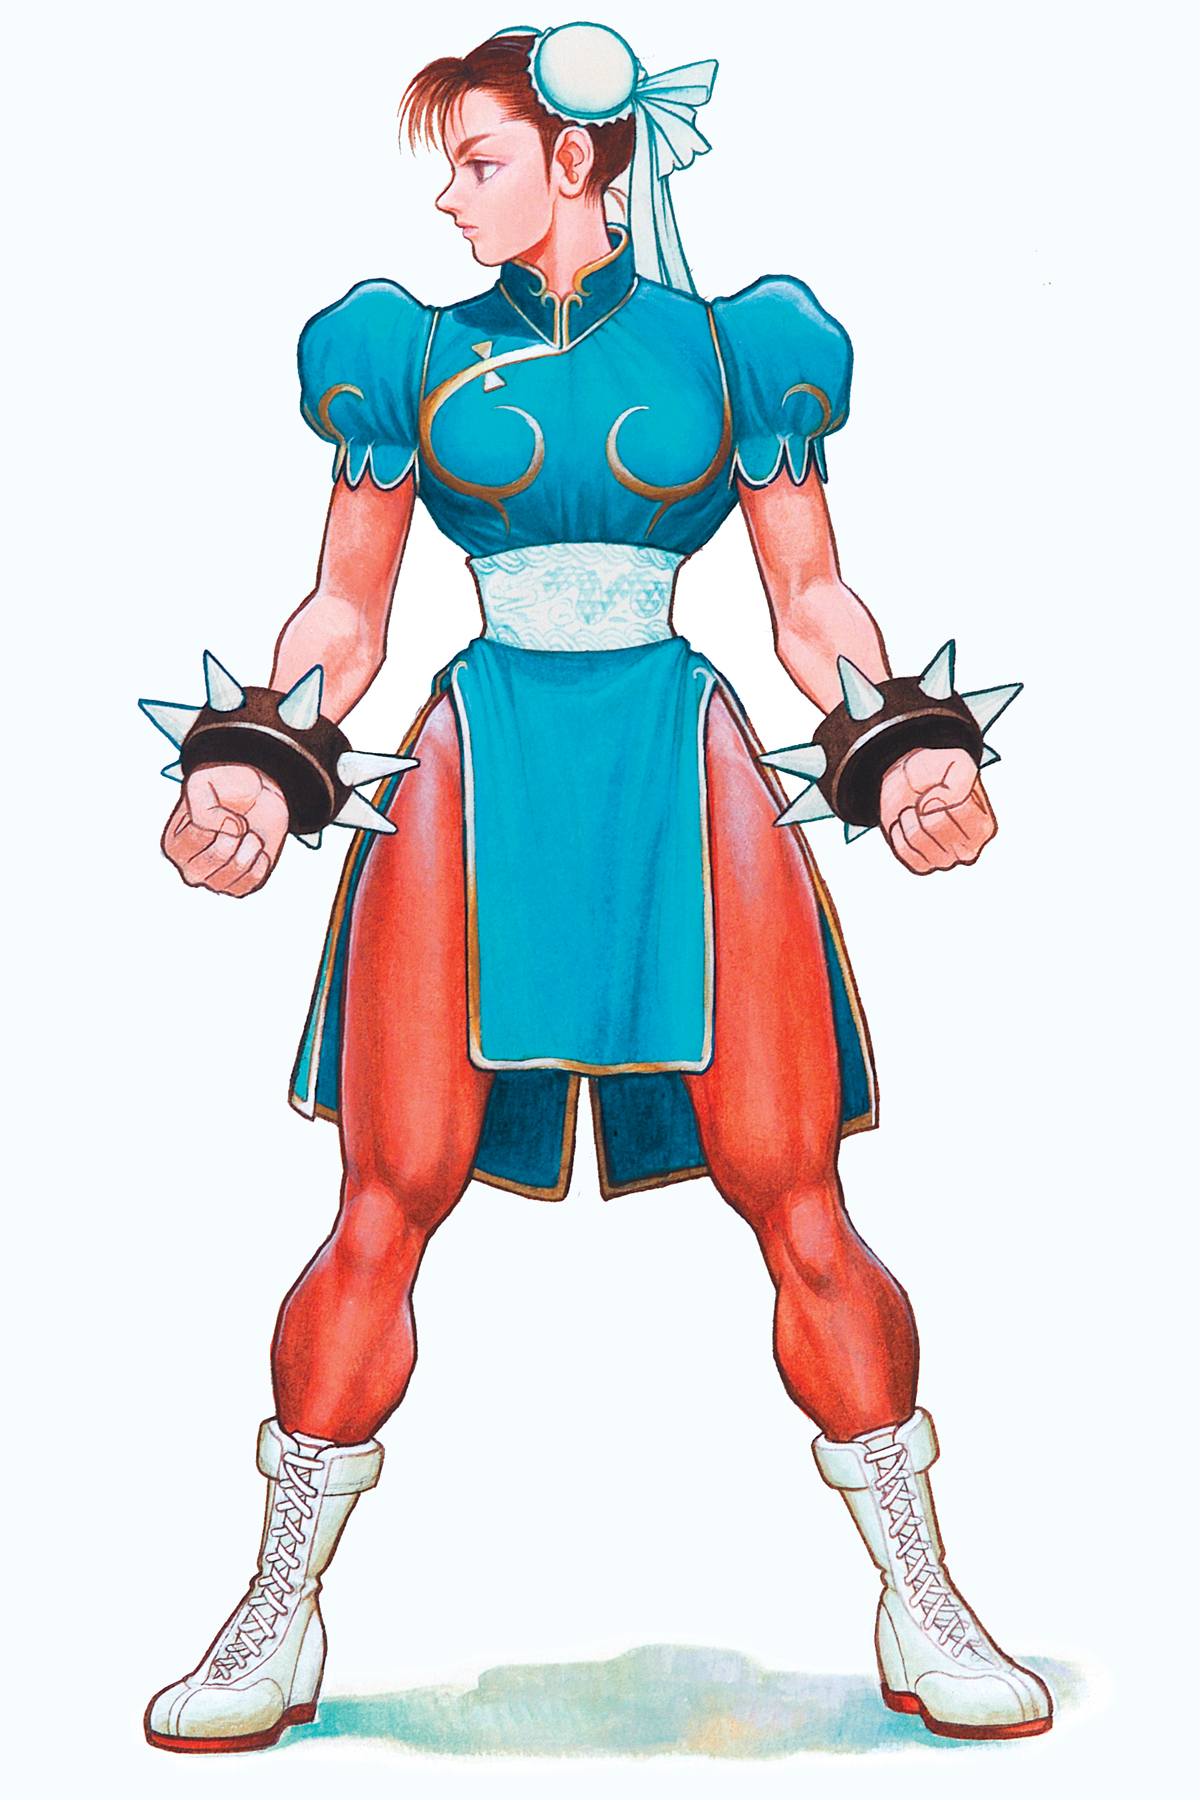 Chun Li Street Fighter Street Fighter Chun Li Wallpaper ·① 